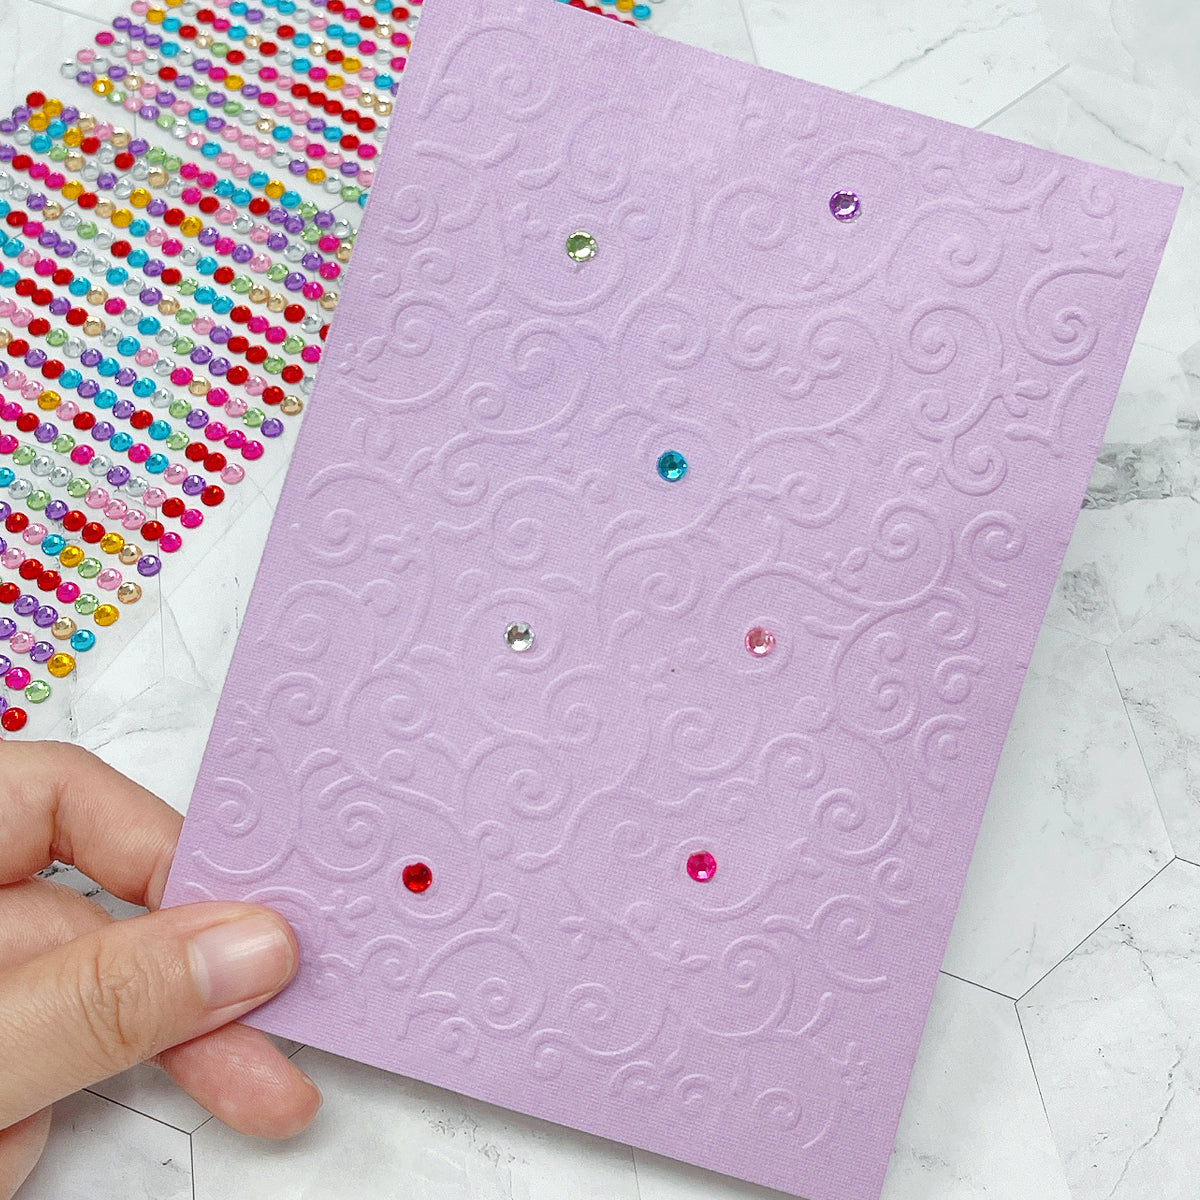 Cloud Plastic Embossing Folders For Card Making Scrapbook DIY